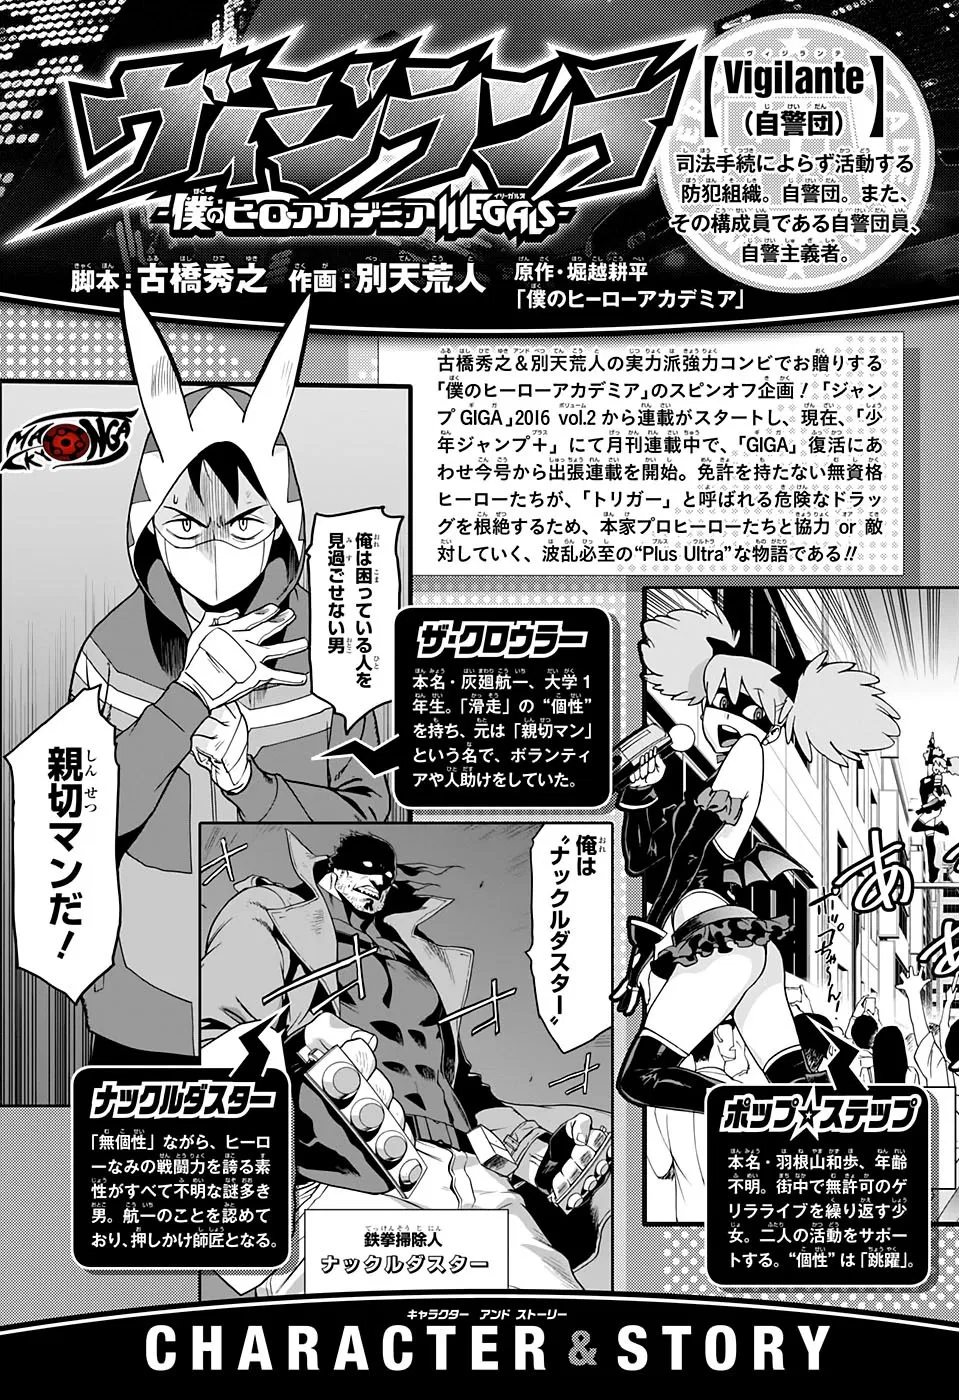 Vigilante: Boku no Hero Academia Illegals Chapter 7.5